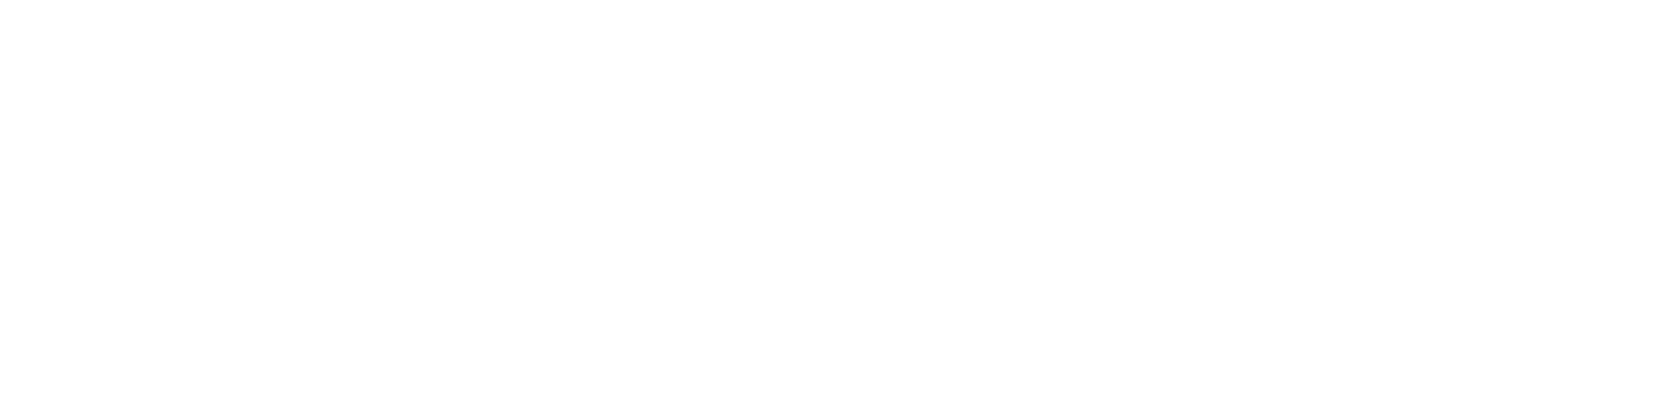 selfmade-energy